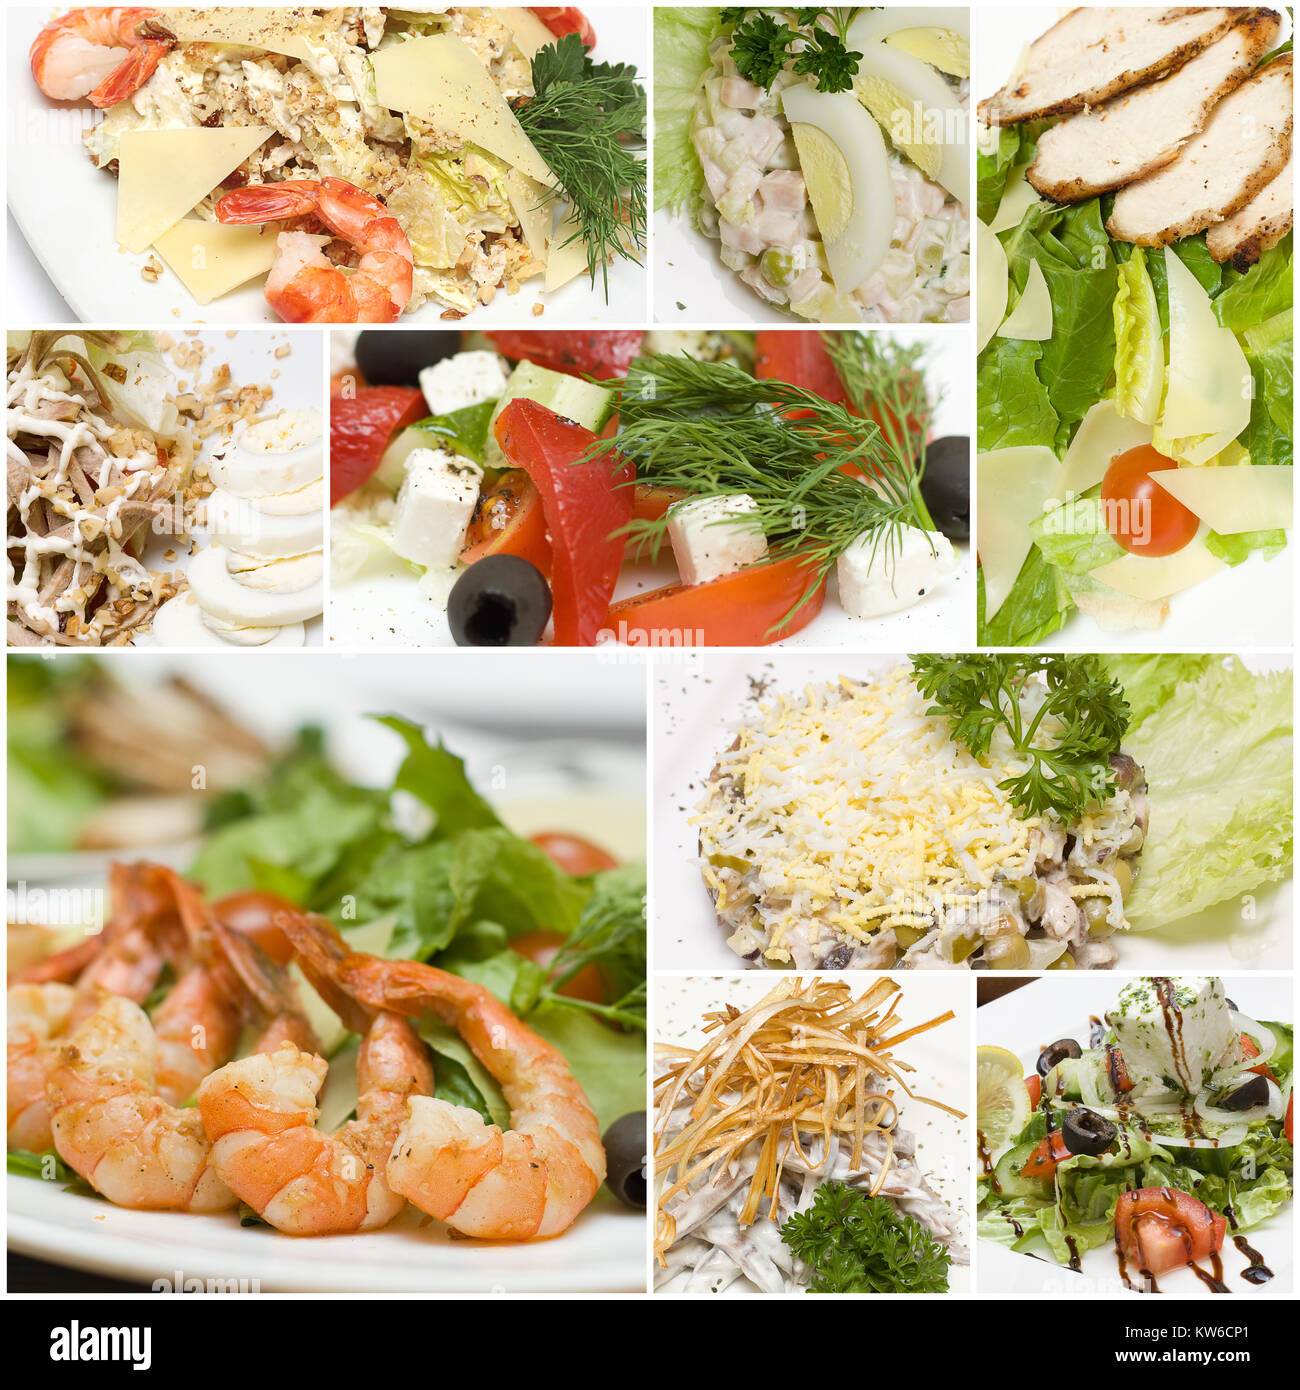 Salades gastronomiques - collage de la cuisine européenne. La saine alimentation Banque D'Images